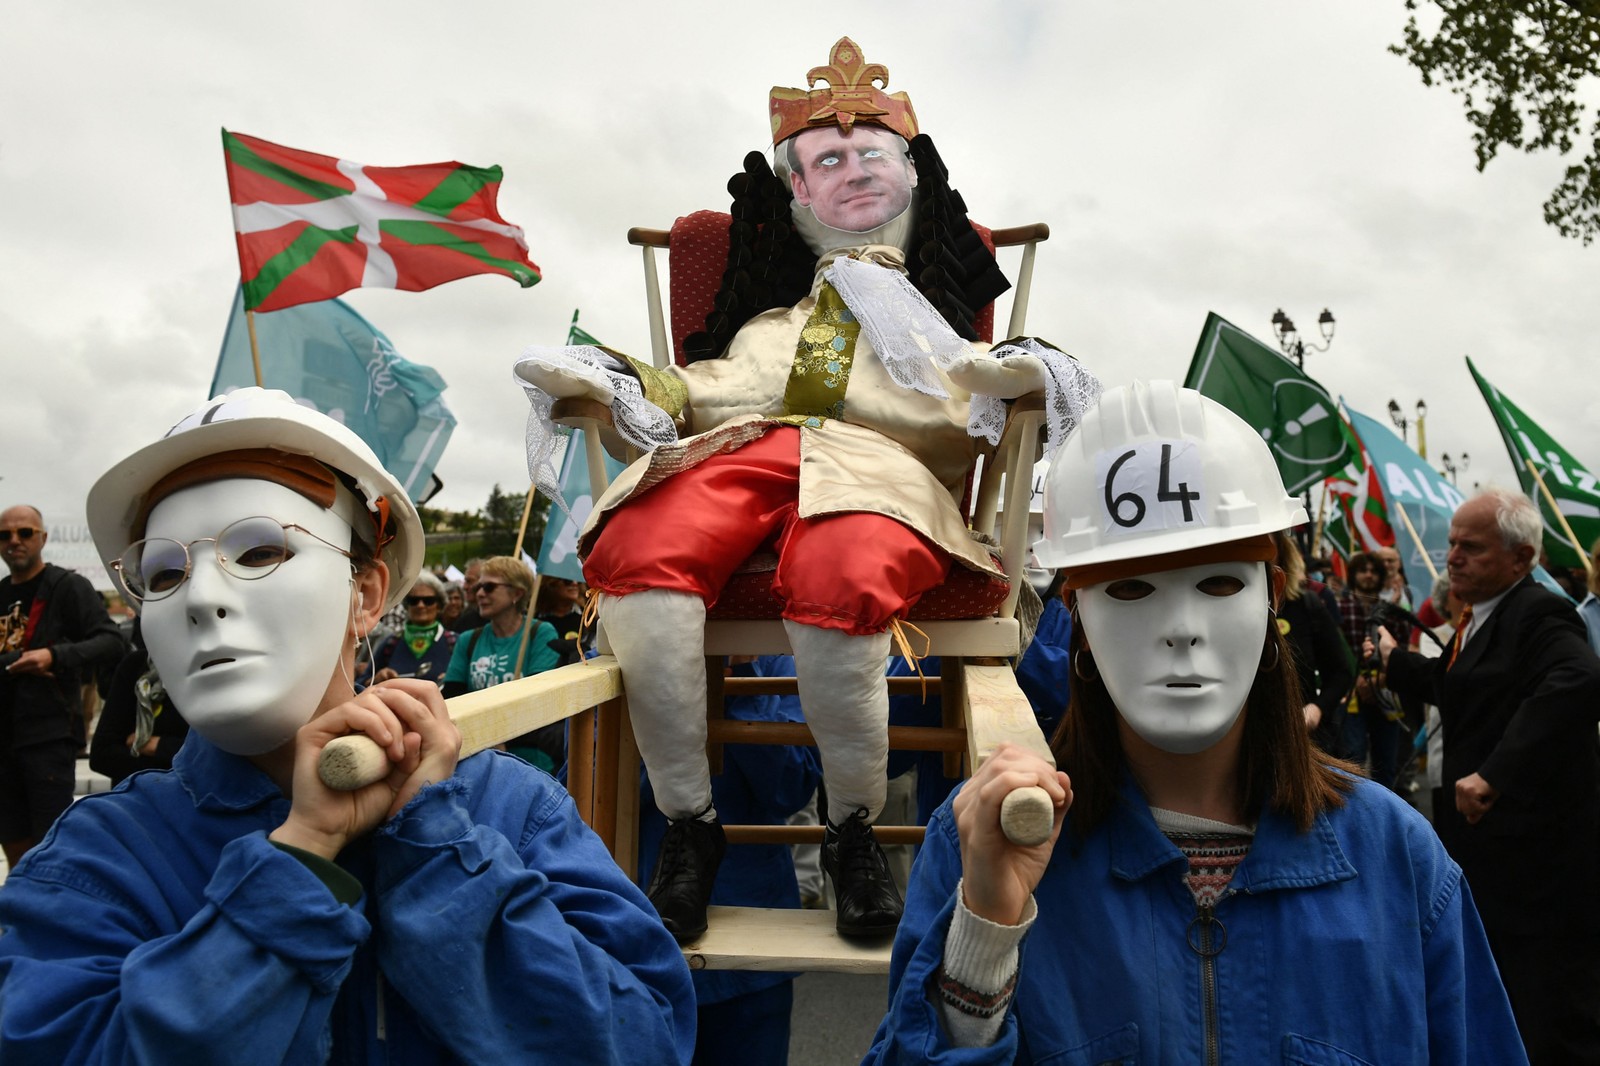 Manifestantes mascarados carregam um boneco representando o presidente francês, Emmanuel Macron, enquanto participam de uma manifestação no Primeiro de Maio, em Bayonne, sul da França — Foto: GAIZKA IROZ / AFP